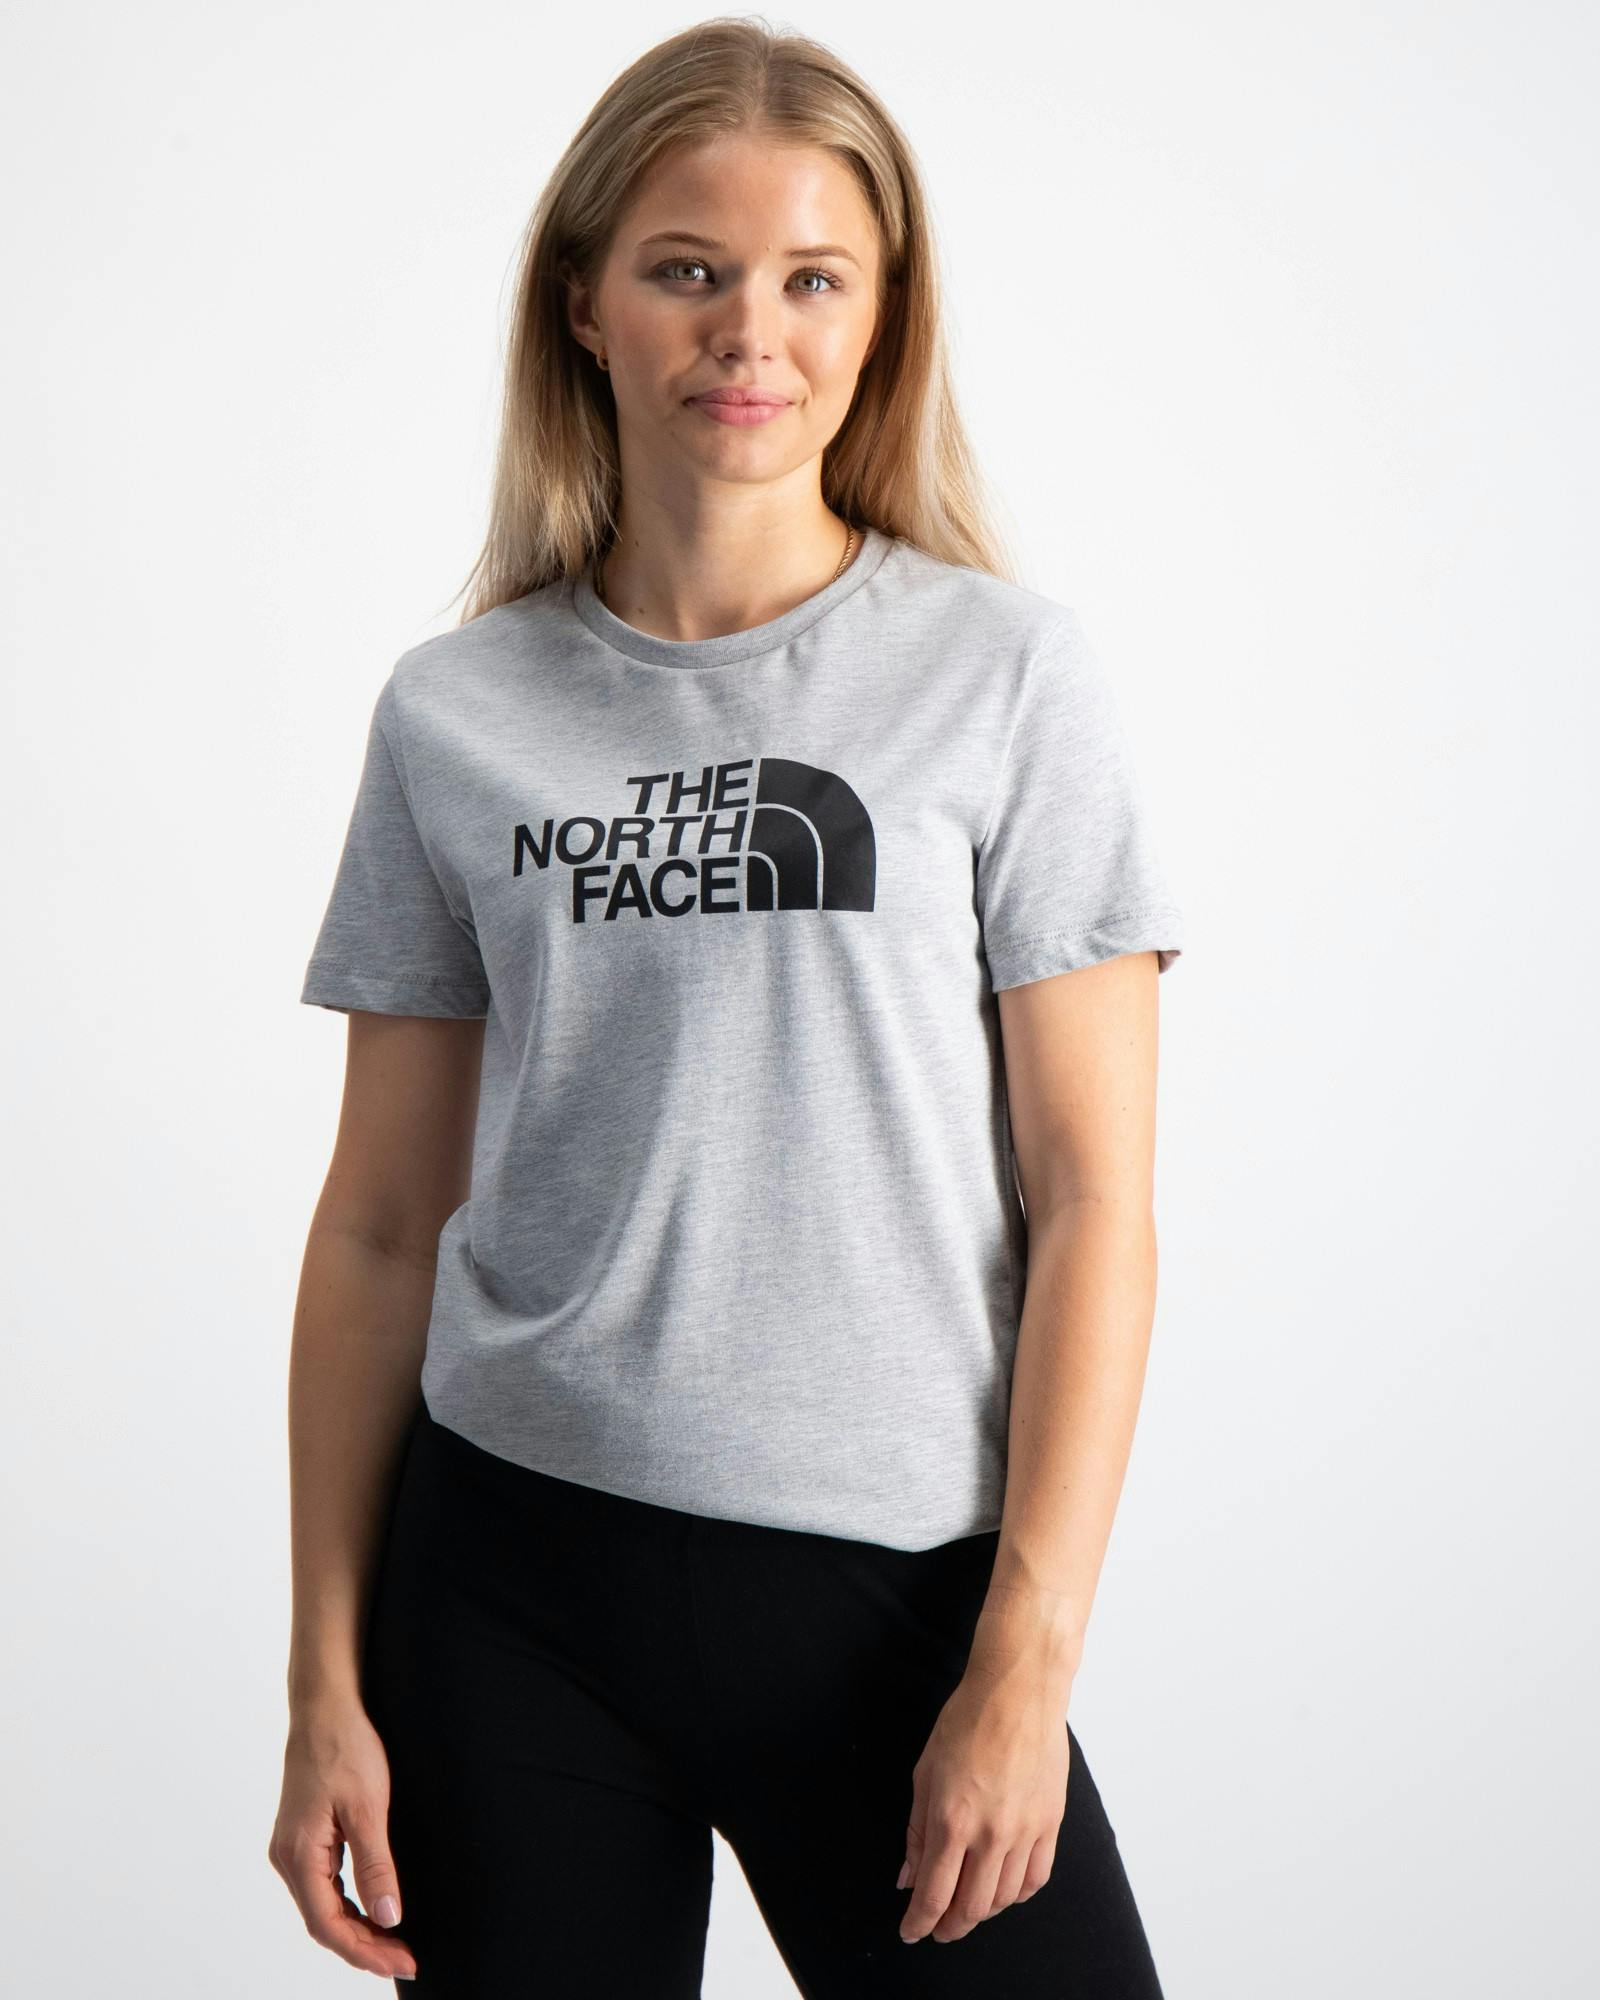 The North Face T-Shirts Kids und Jugendliche Store Brand Kinder für 